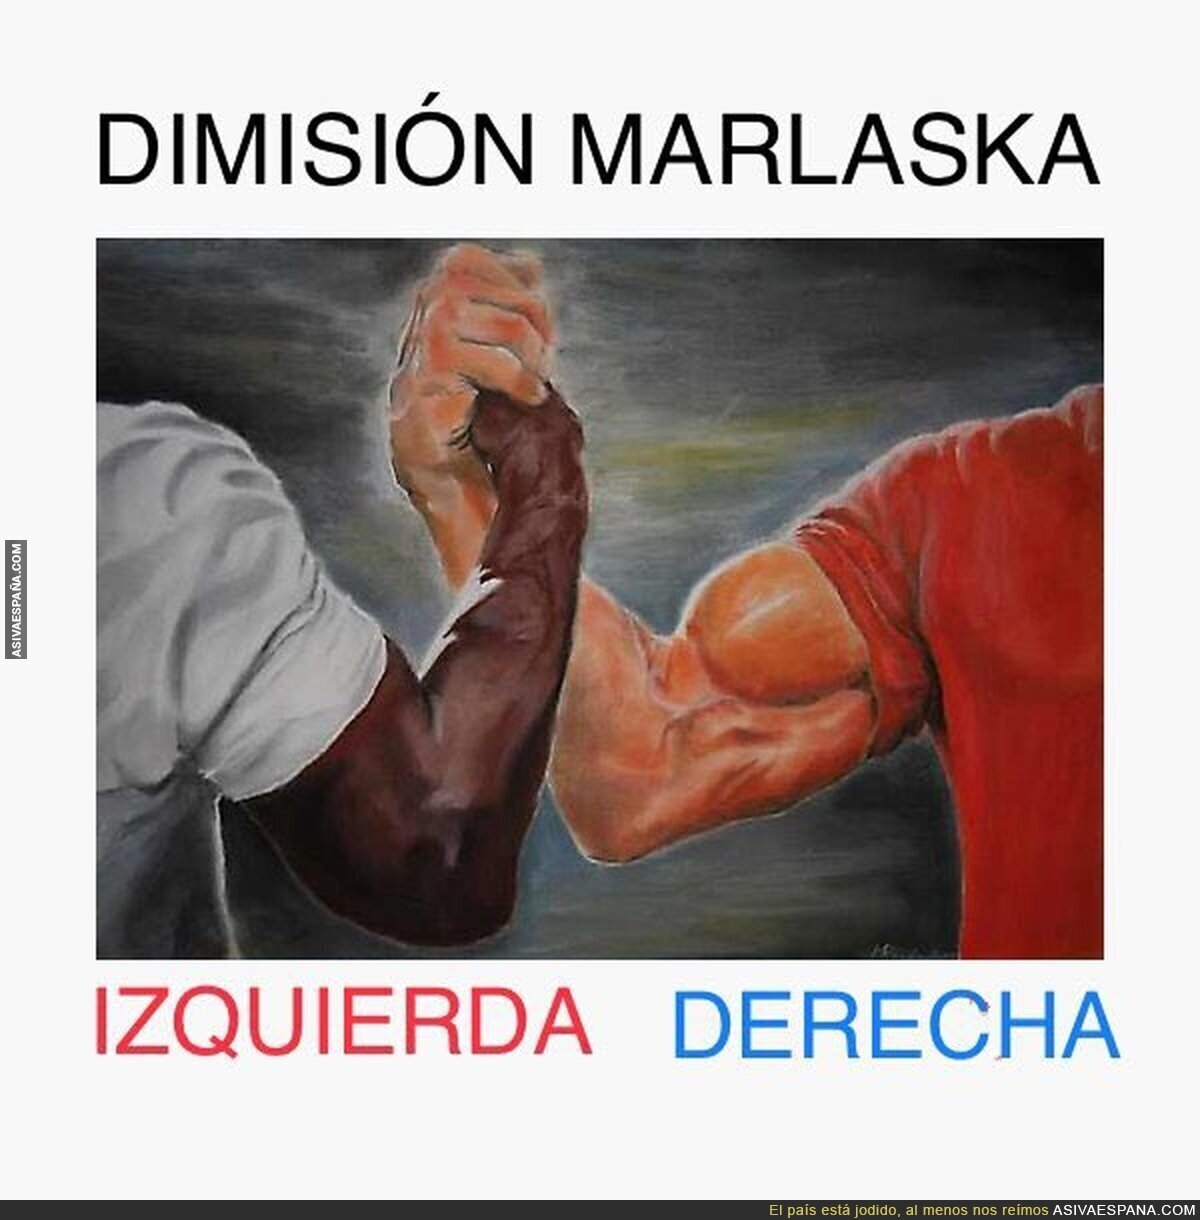 Lo único que vertebra ahora mismo a España, el odio a Marlaska., por @tortondo